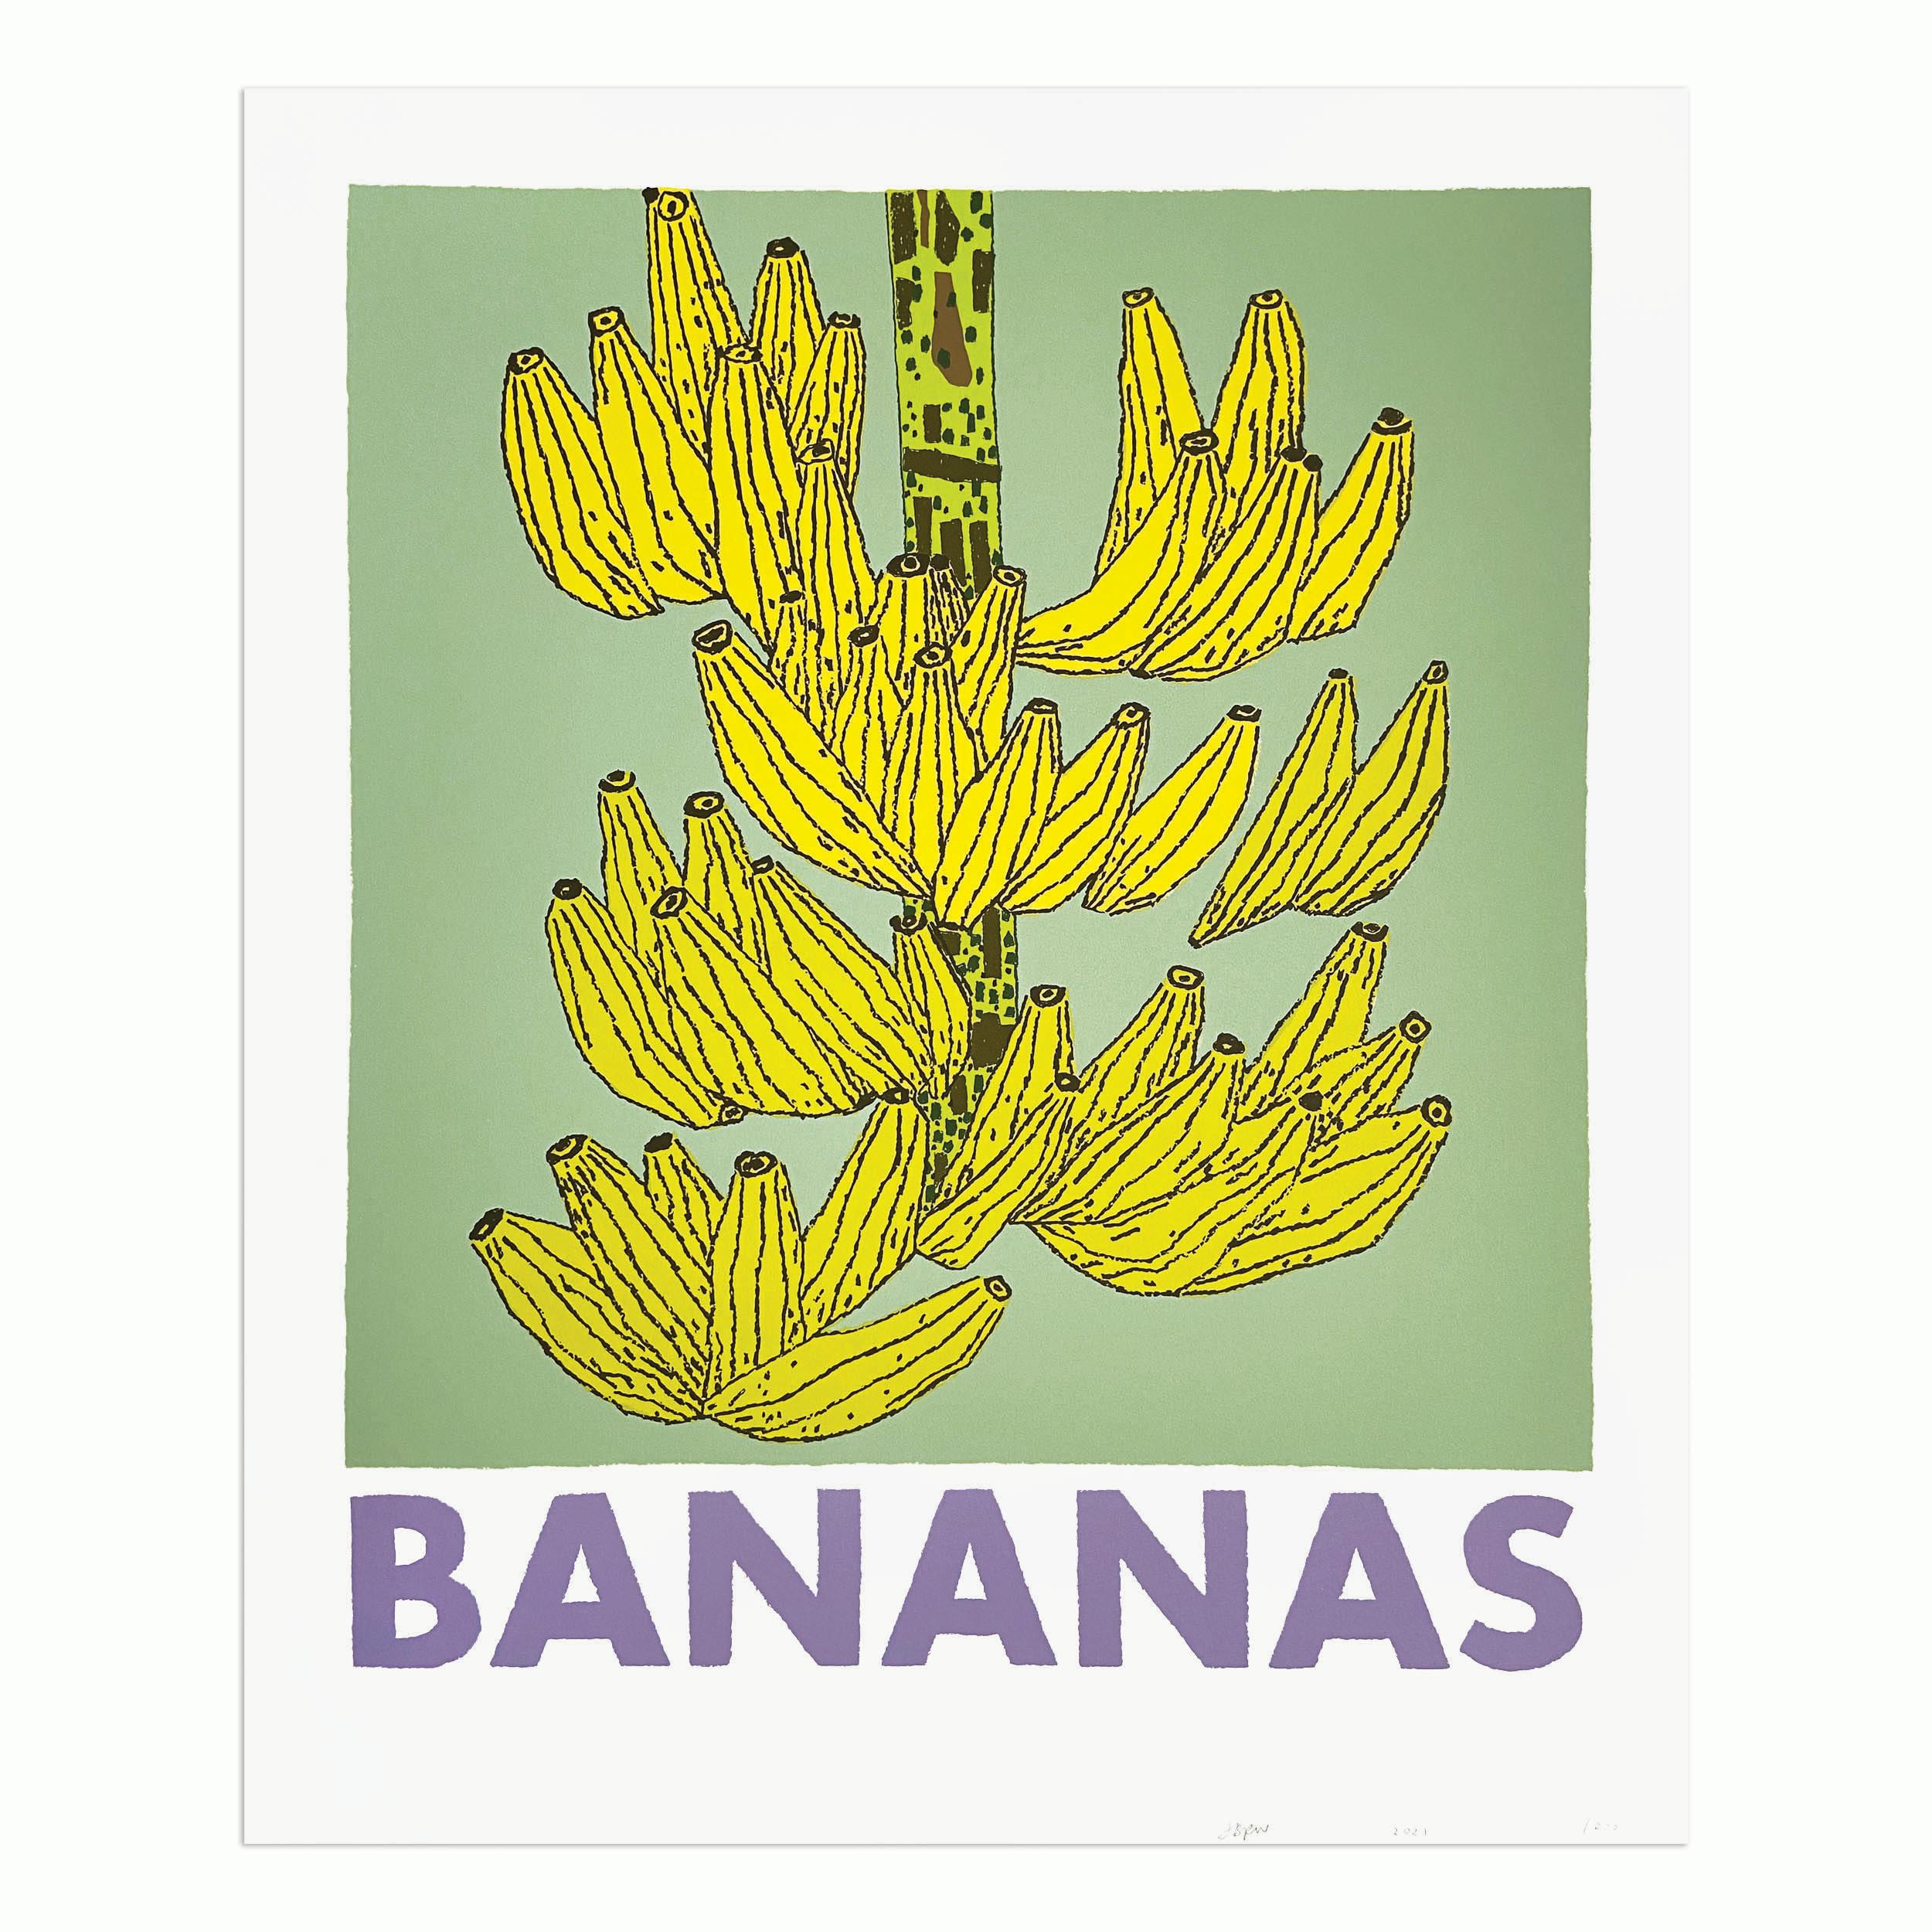 Jonas Wood, Bananas - Impression signée, art contemporain, nature morte, sérigraphie